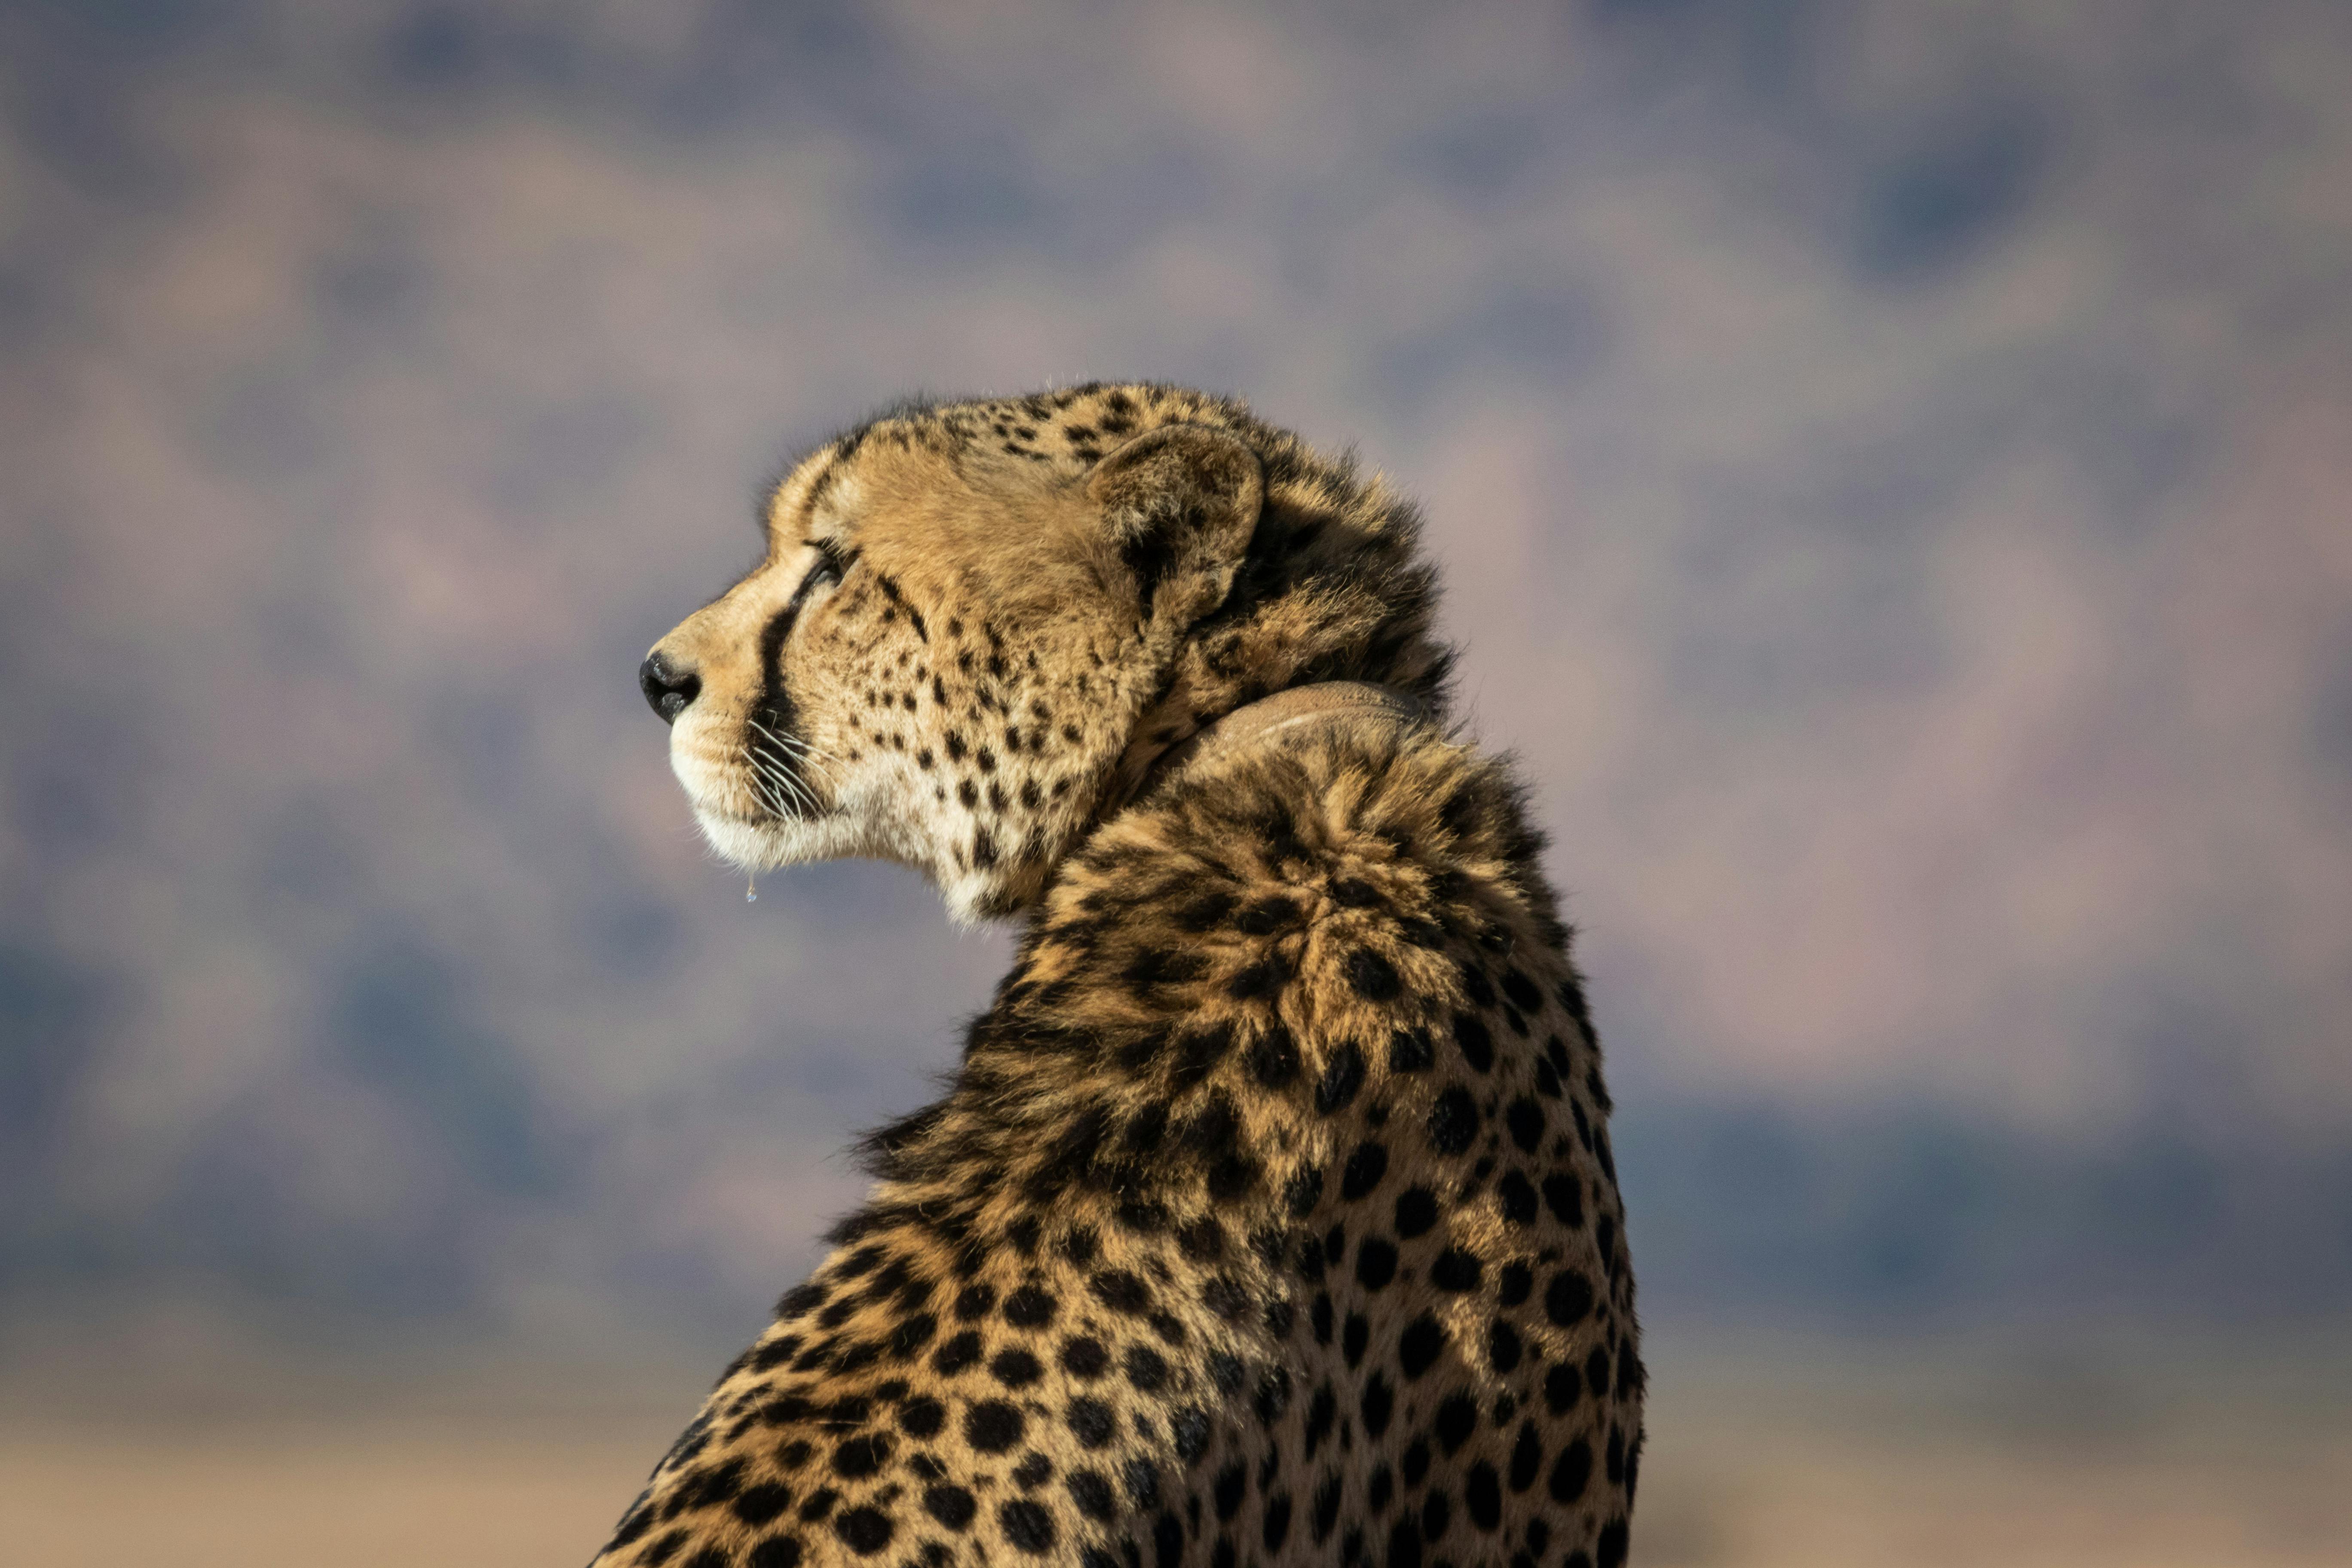 Download Cheetah Wallpaper